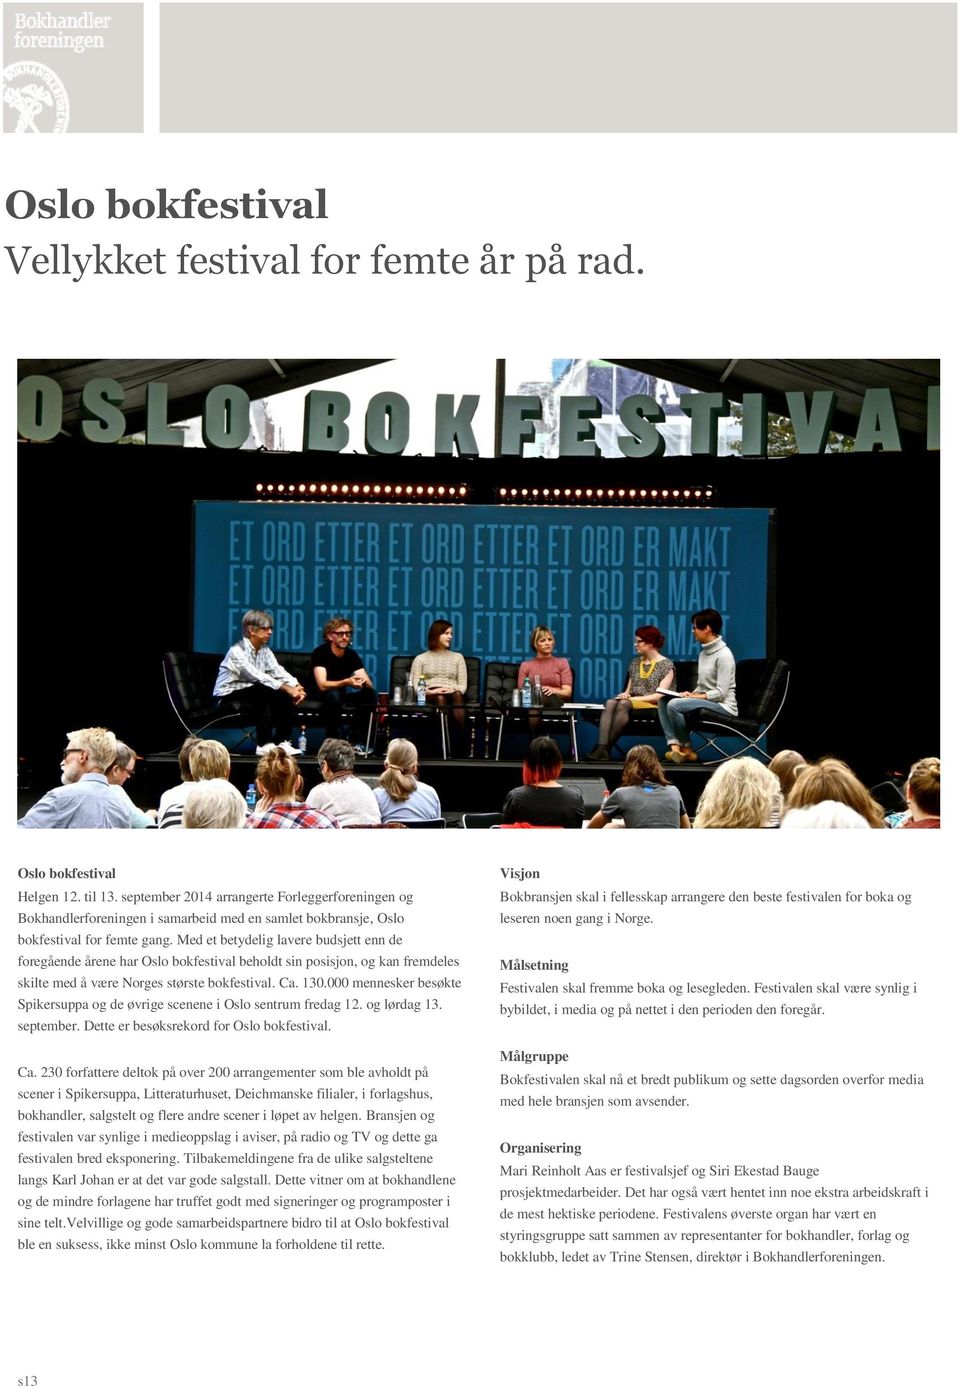 Med et betydelig lavere budsjett enn de foregående årene har Oslo bokfestival beholdt sin posisjon, og kan fremdeles skilte med å være Norges største bokfestival. Ca. 130.